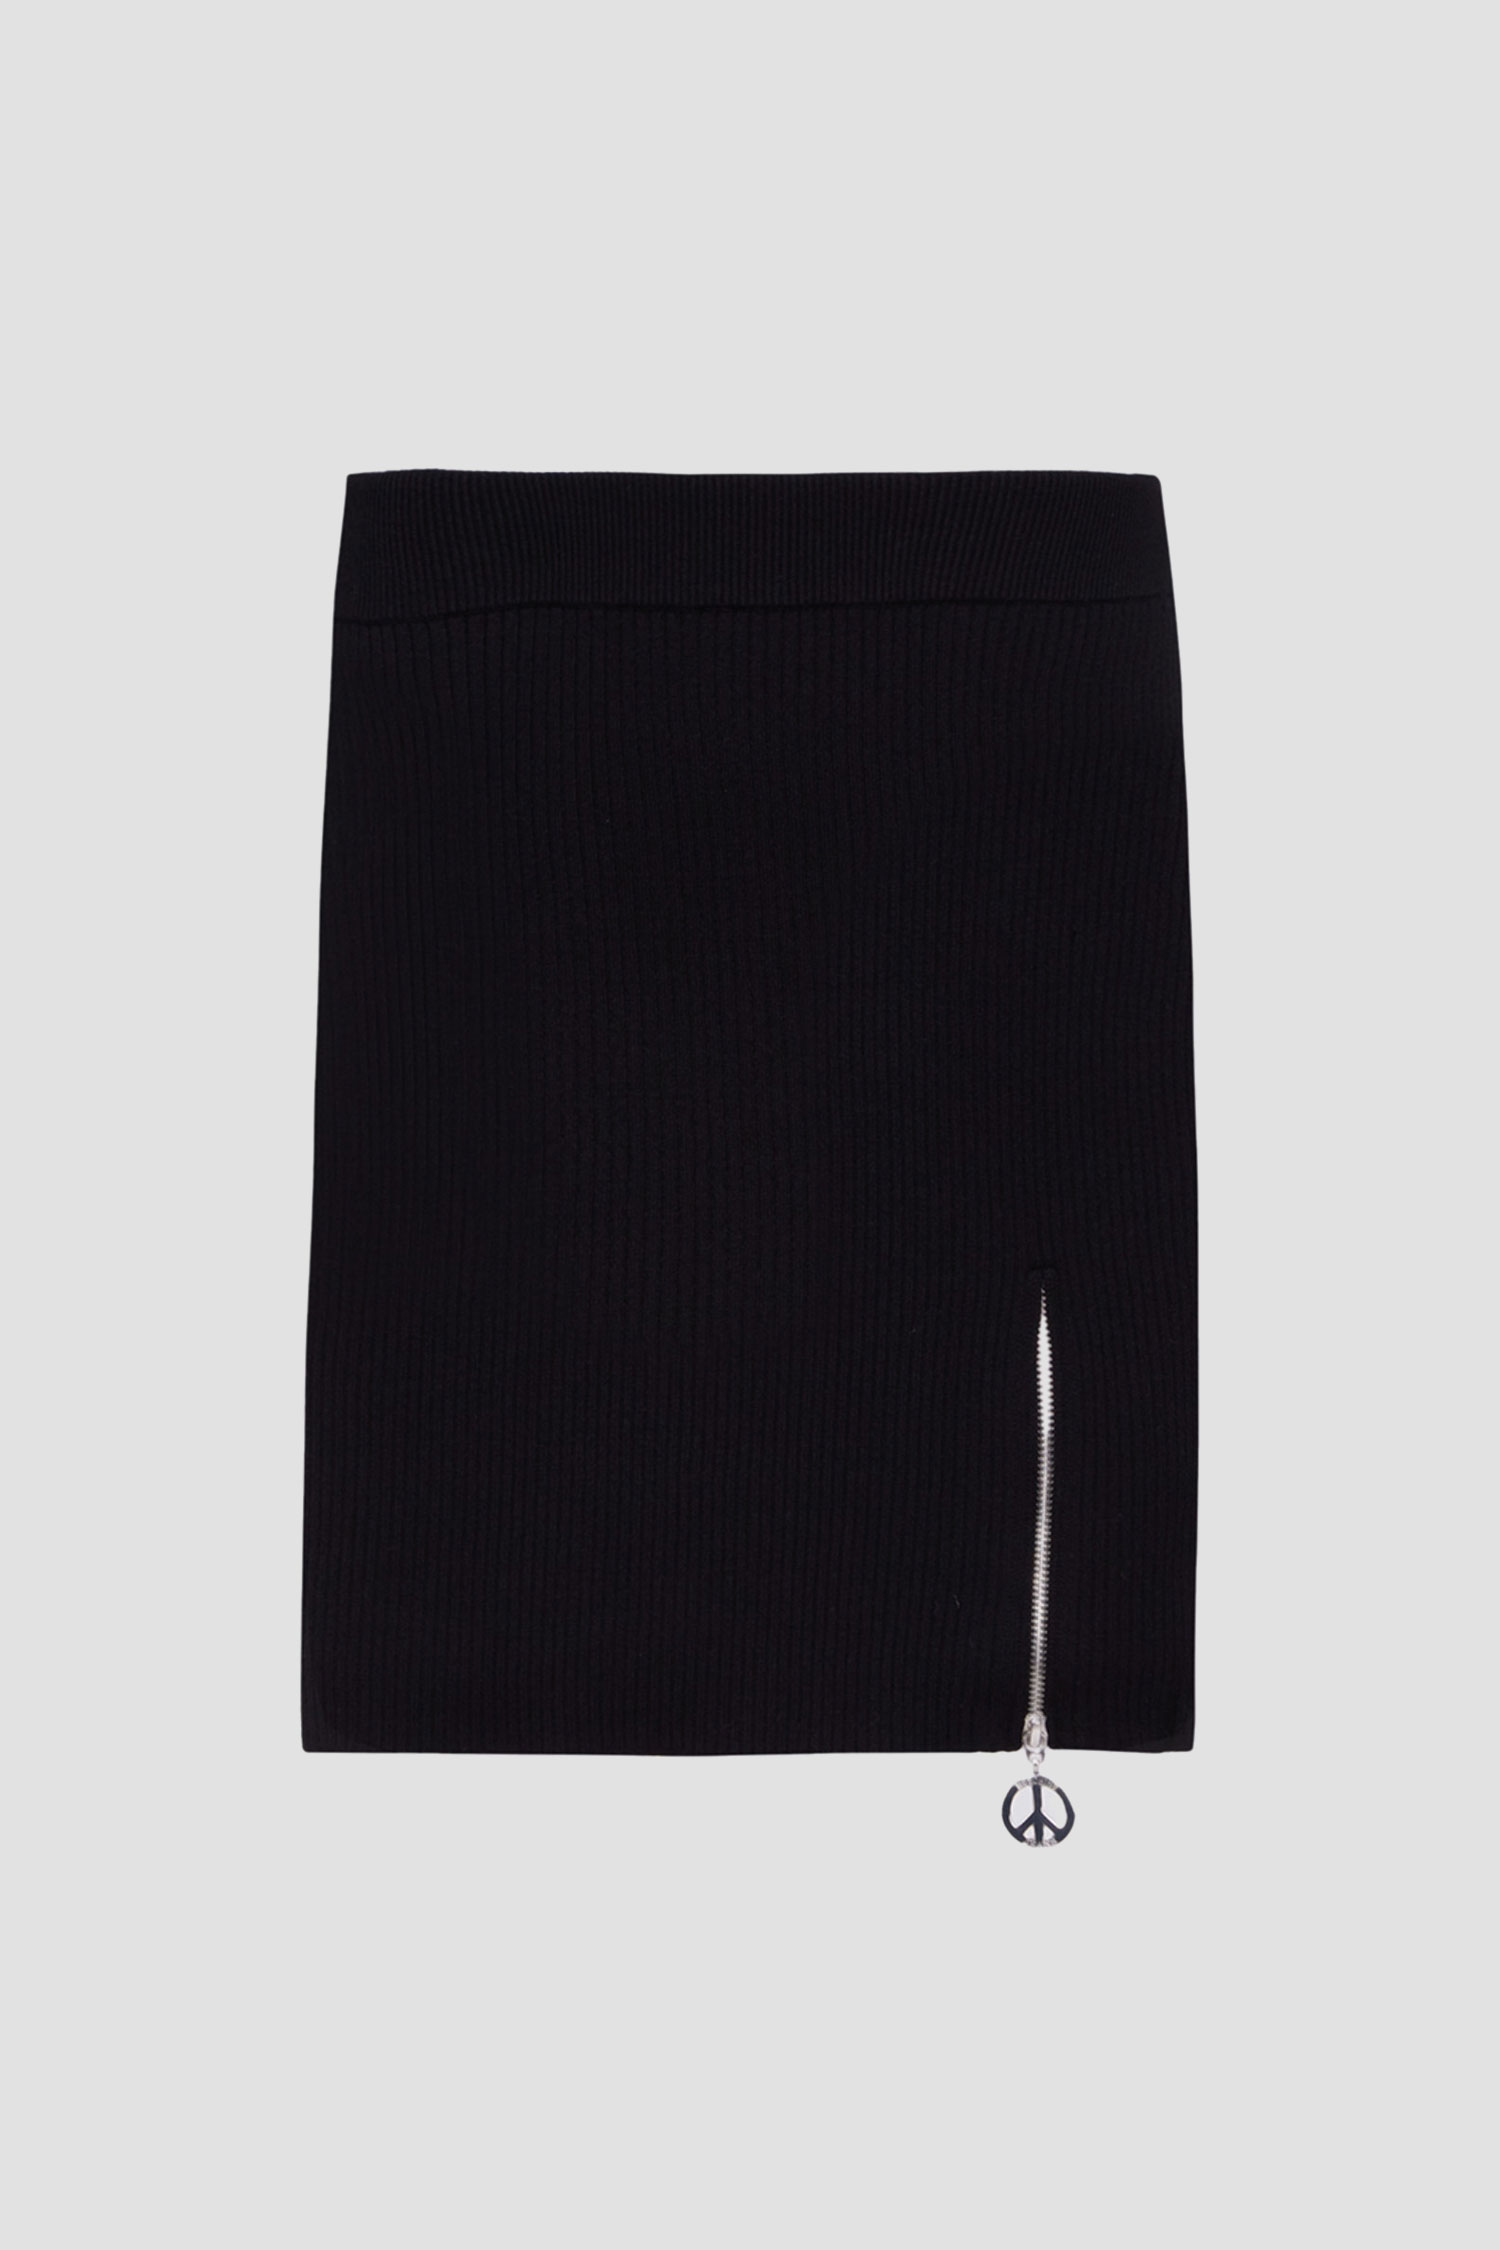 Женская черная юбка Moschino A0182.8711;0555